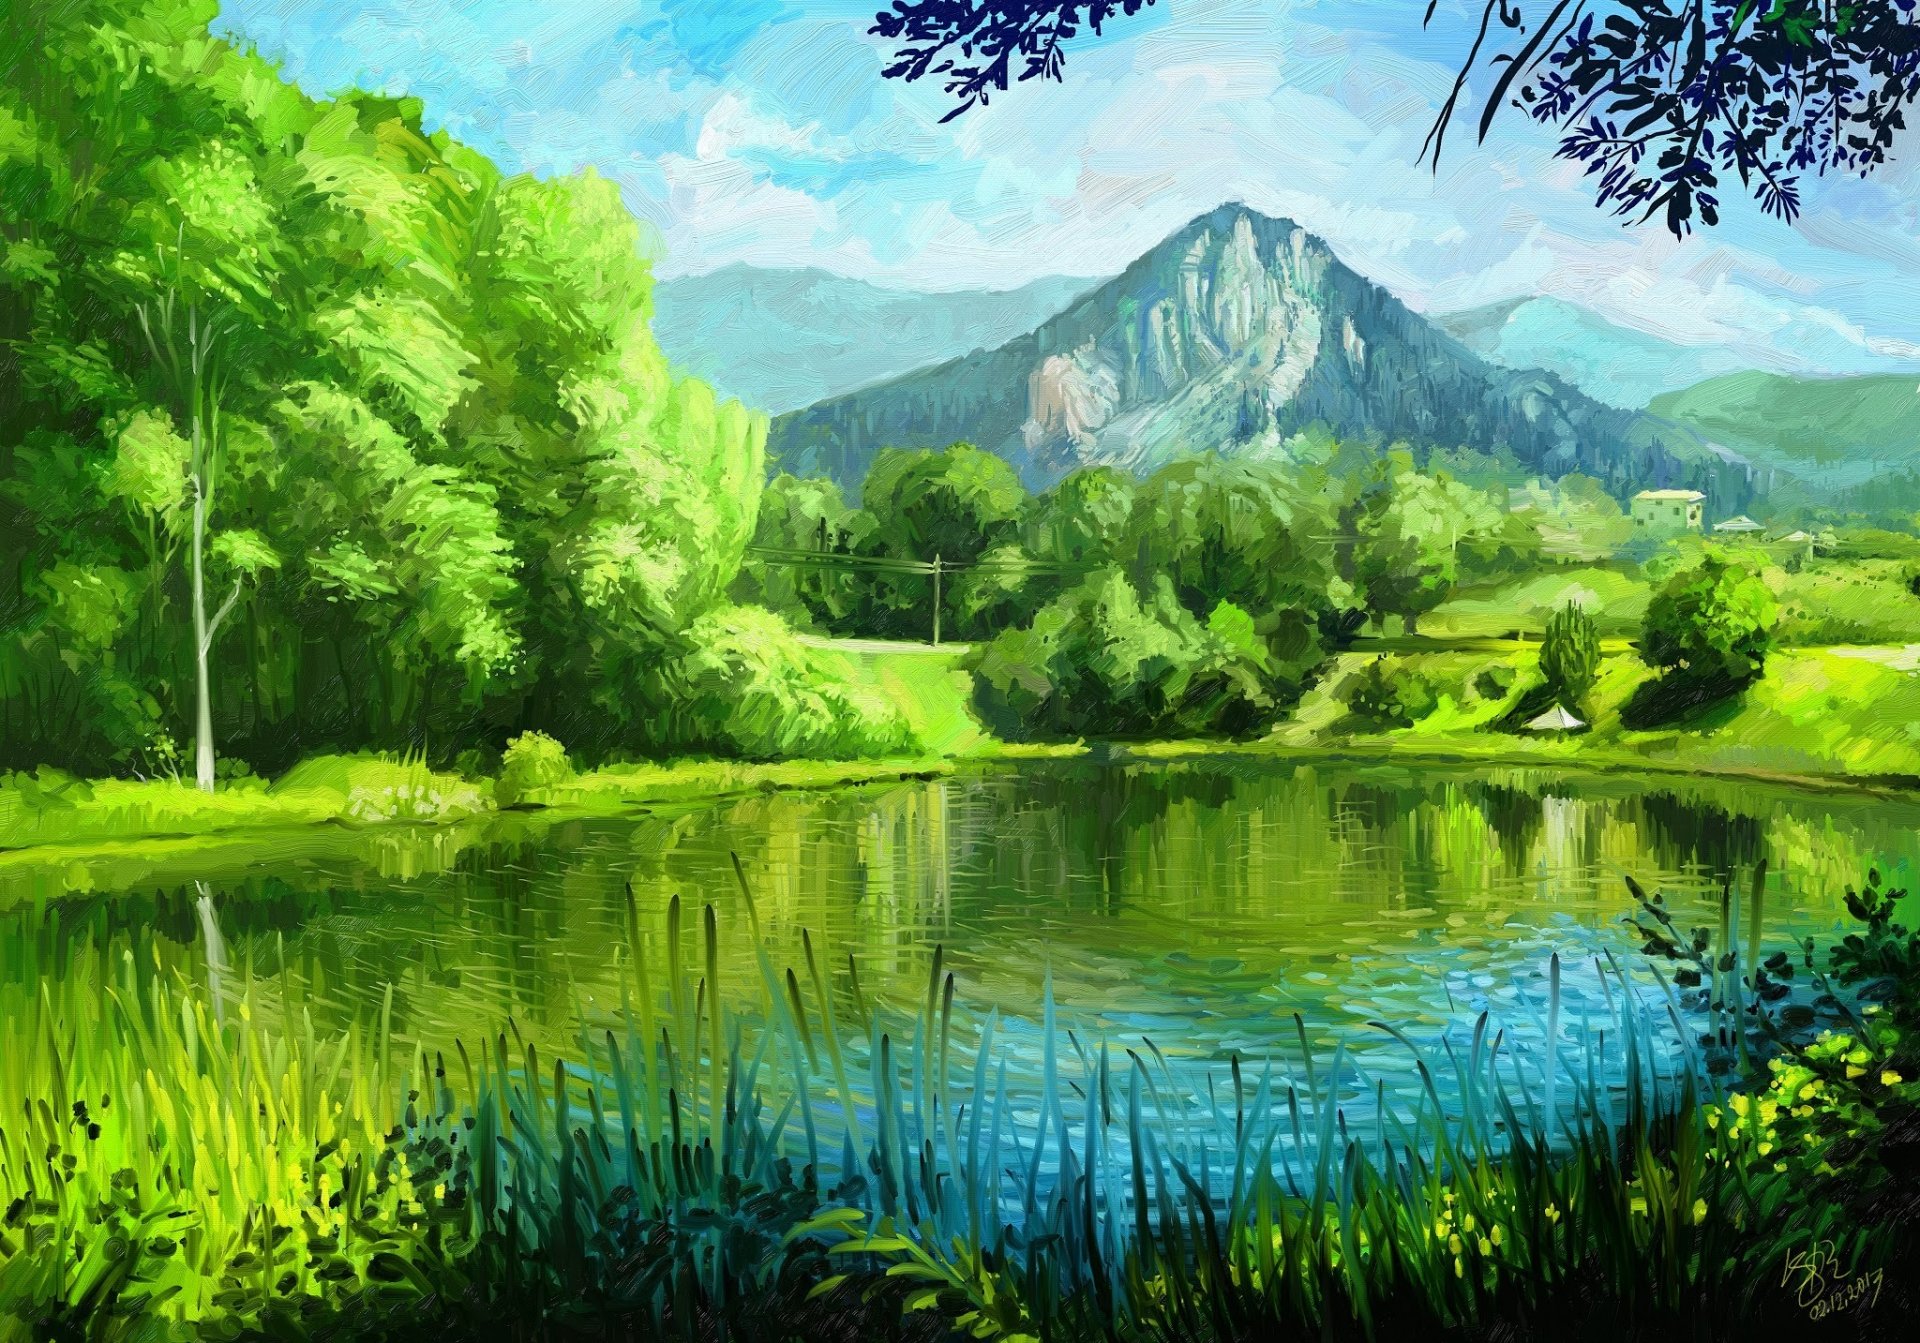 自然絵画壁紙,自然の風景,自然,緑,水資源,反射